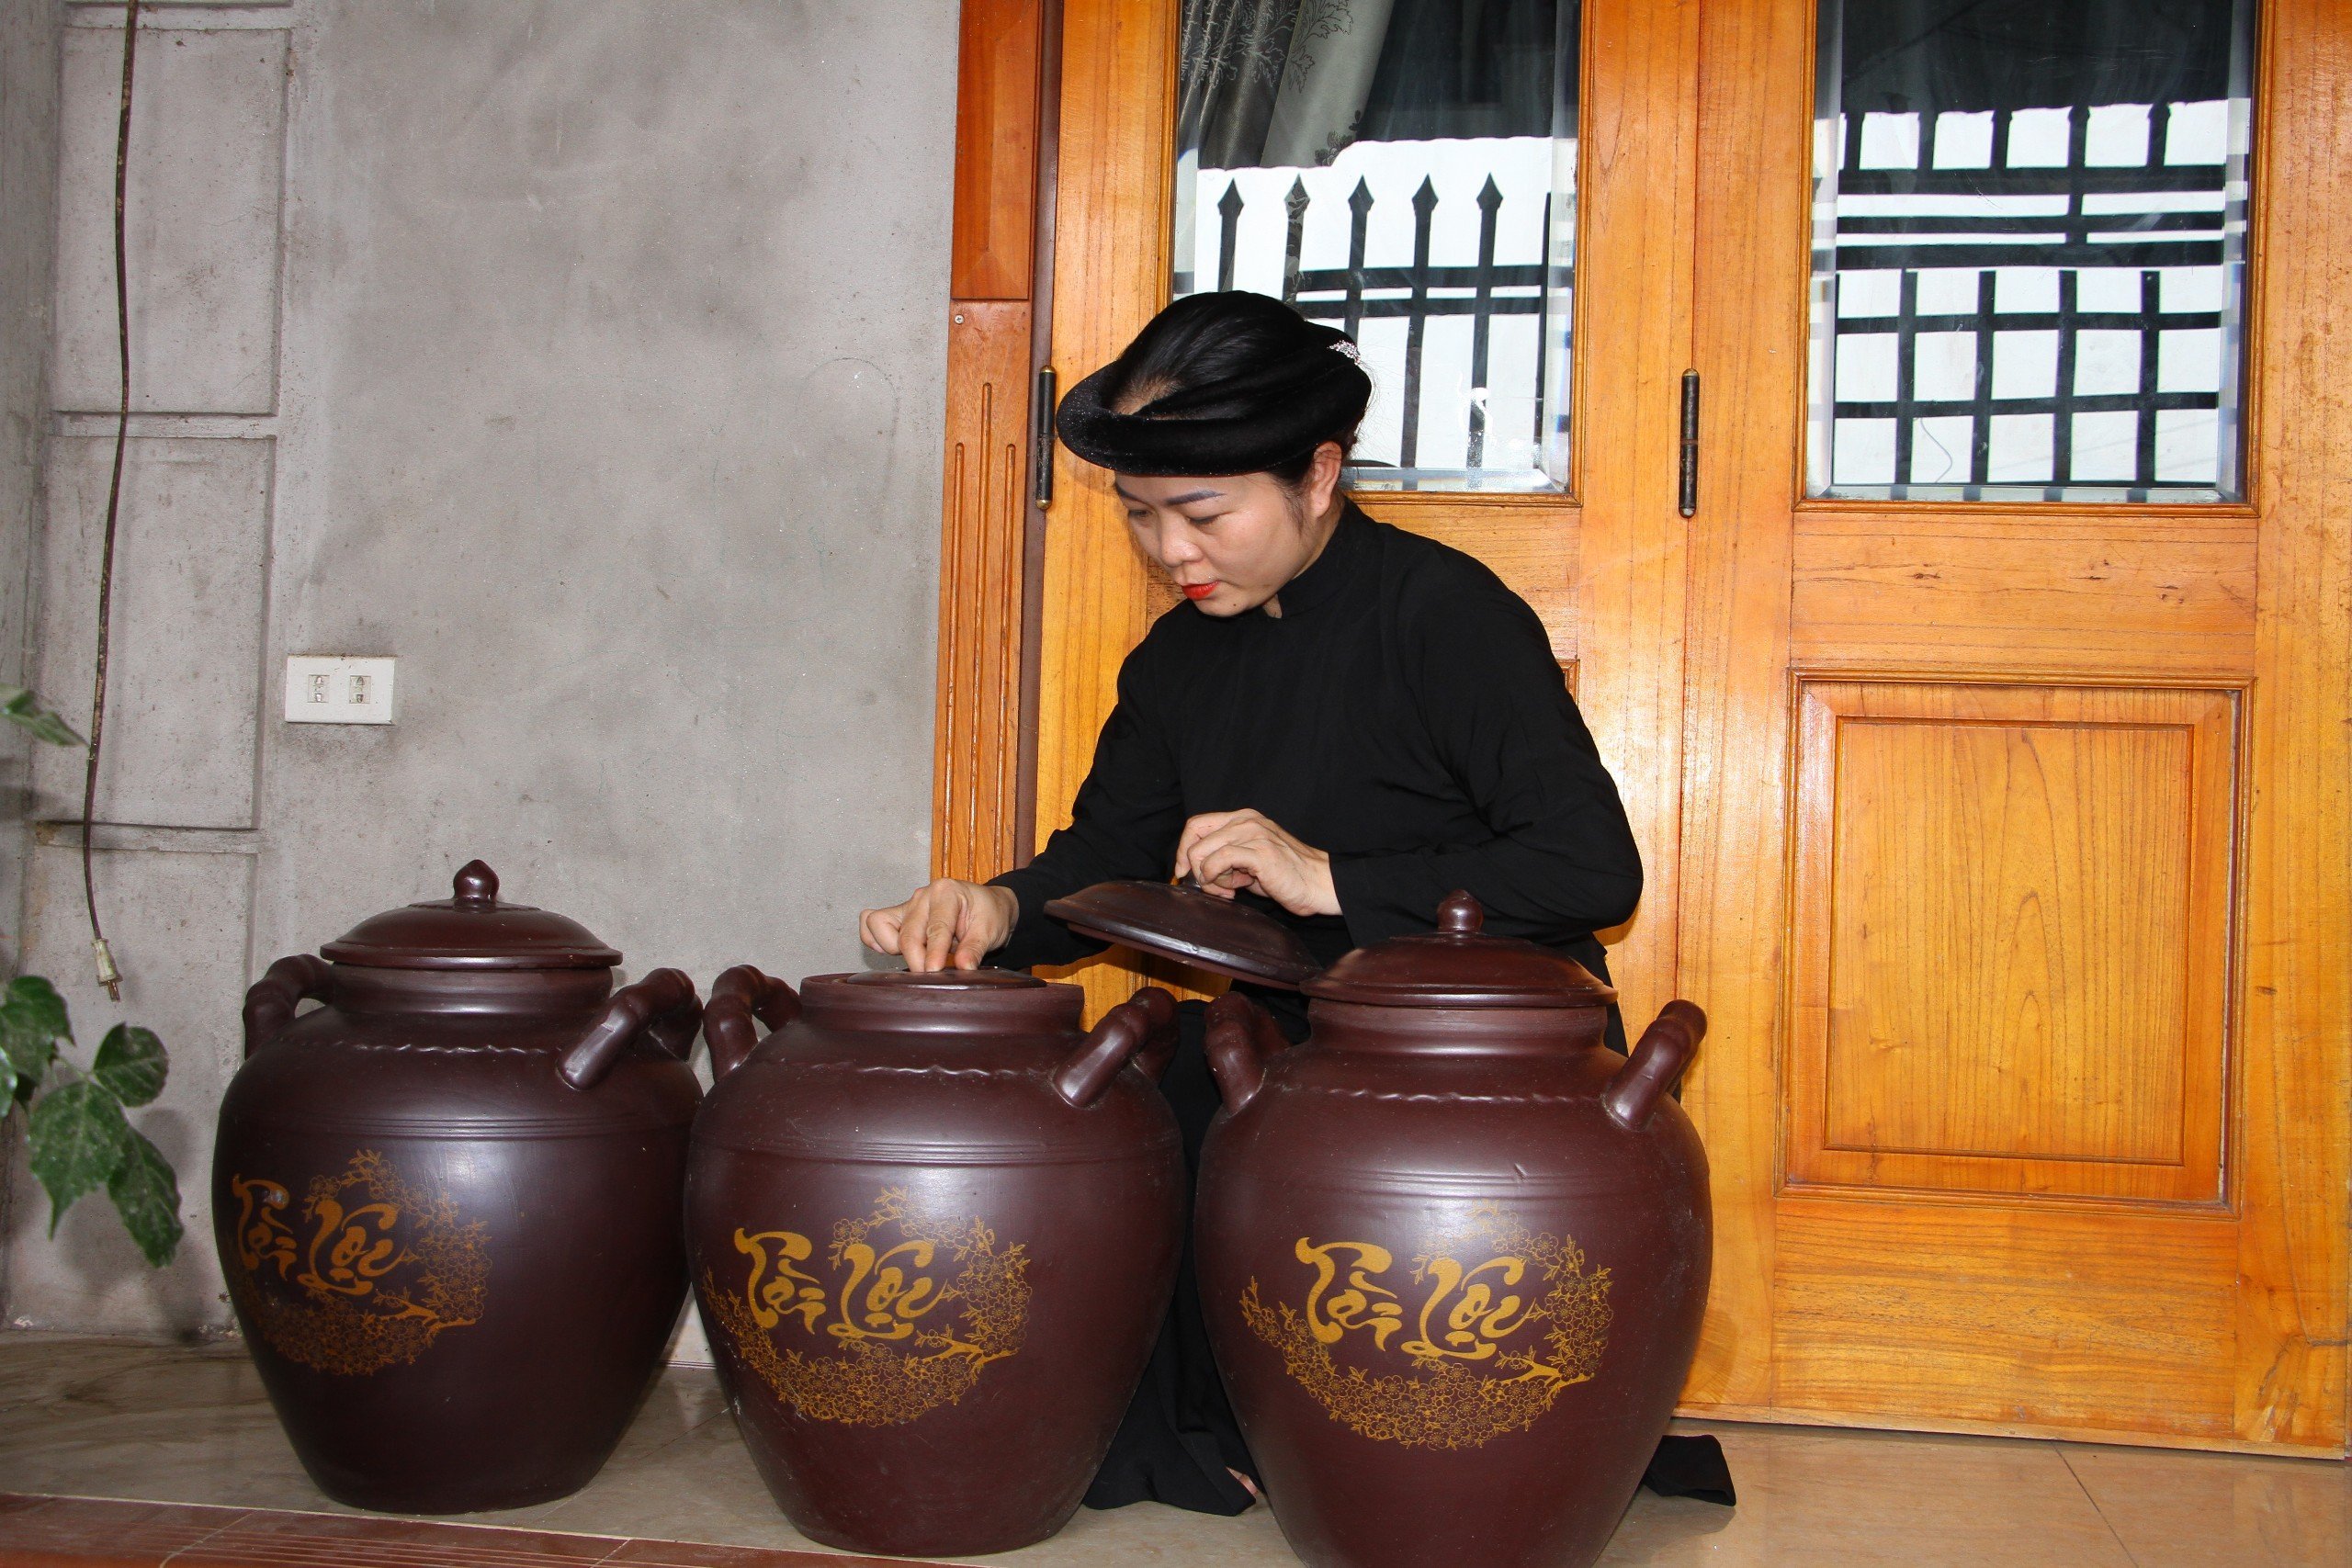 Nét văn hóa độc đáo trong cỗ Tết người Tày ở Ôn Lương